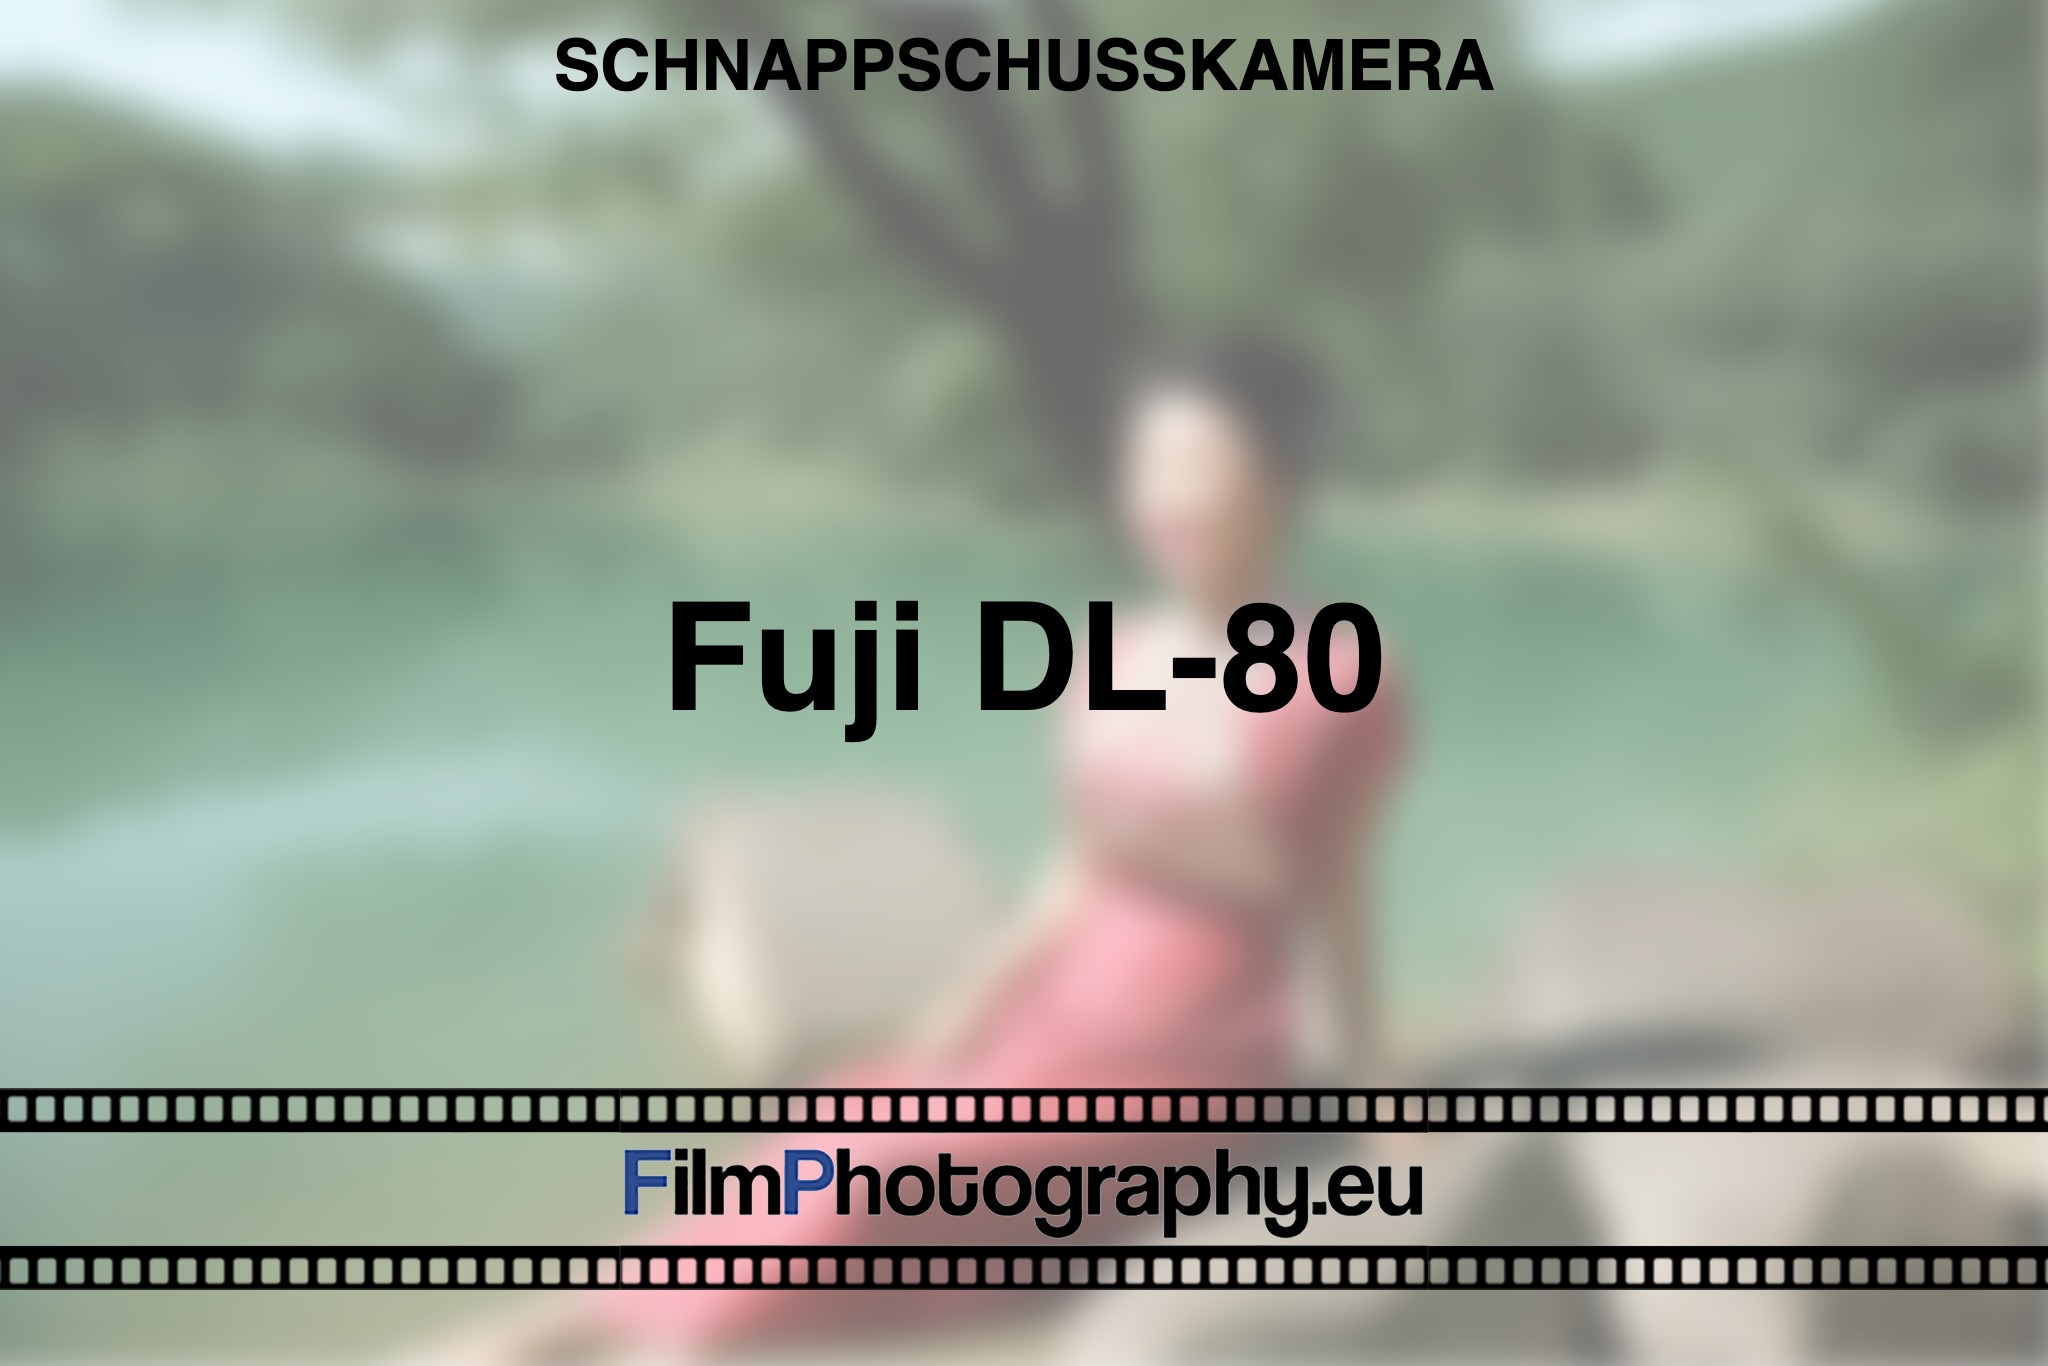 fuji-dl-80-schnappschusskamera-bnv